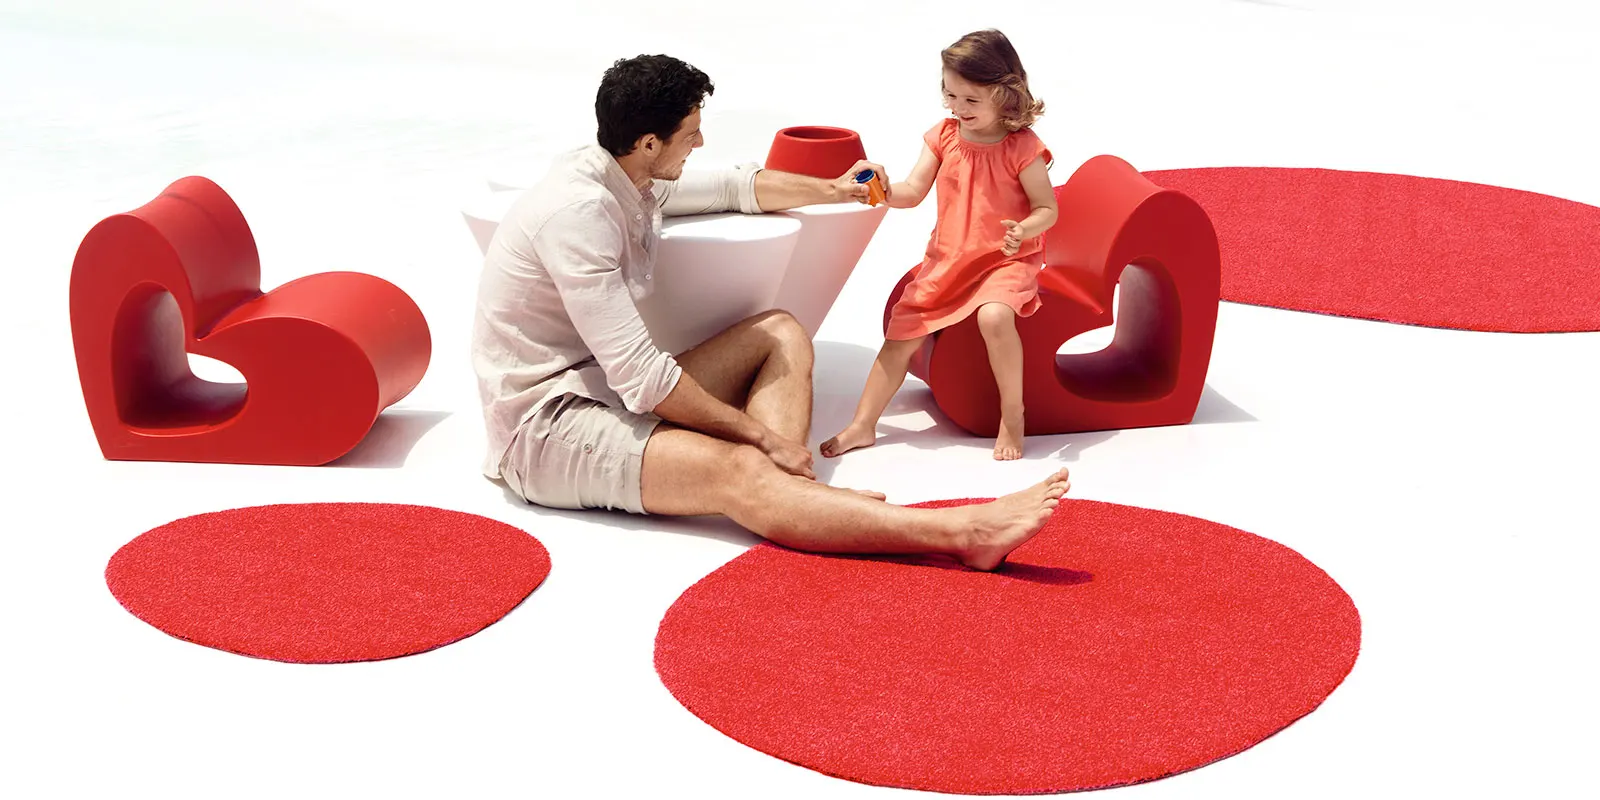 meubles-pour-enfants-jardin-dessin-chaise-tapis-exterieur-agatharuizdelaprada-vondom-1 copie